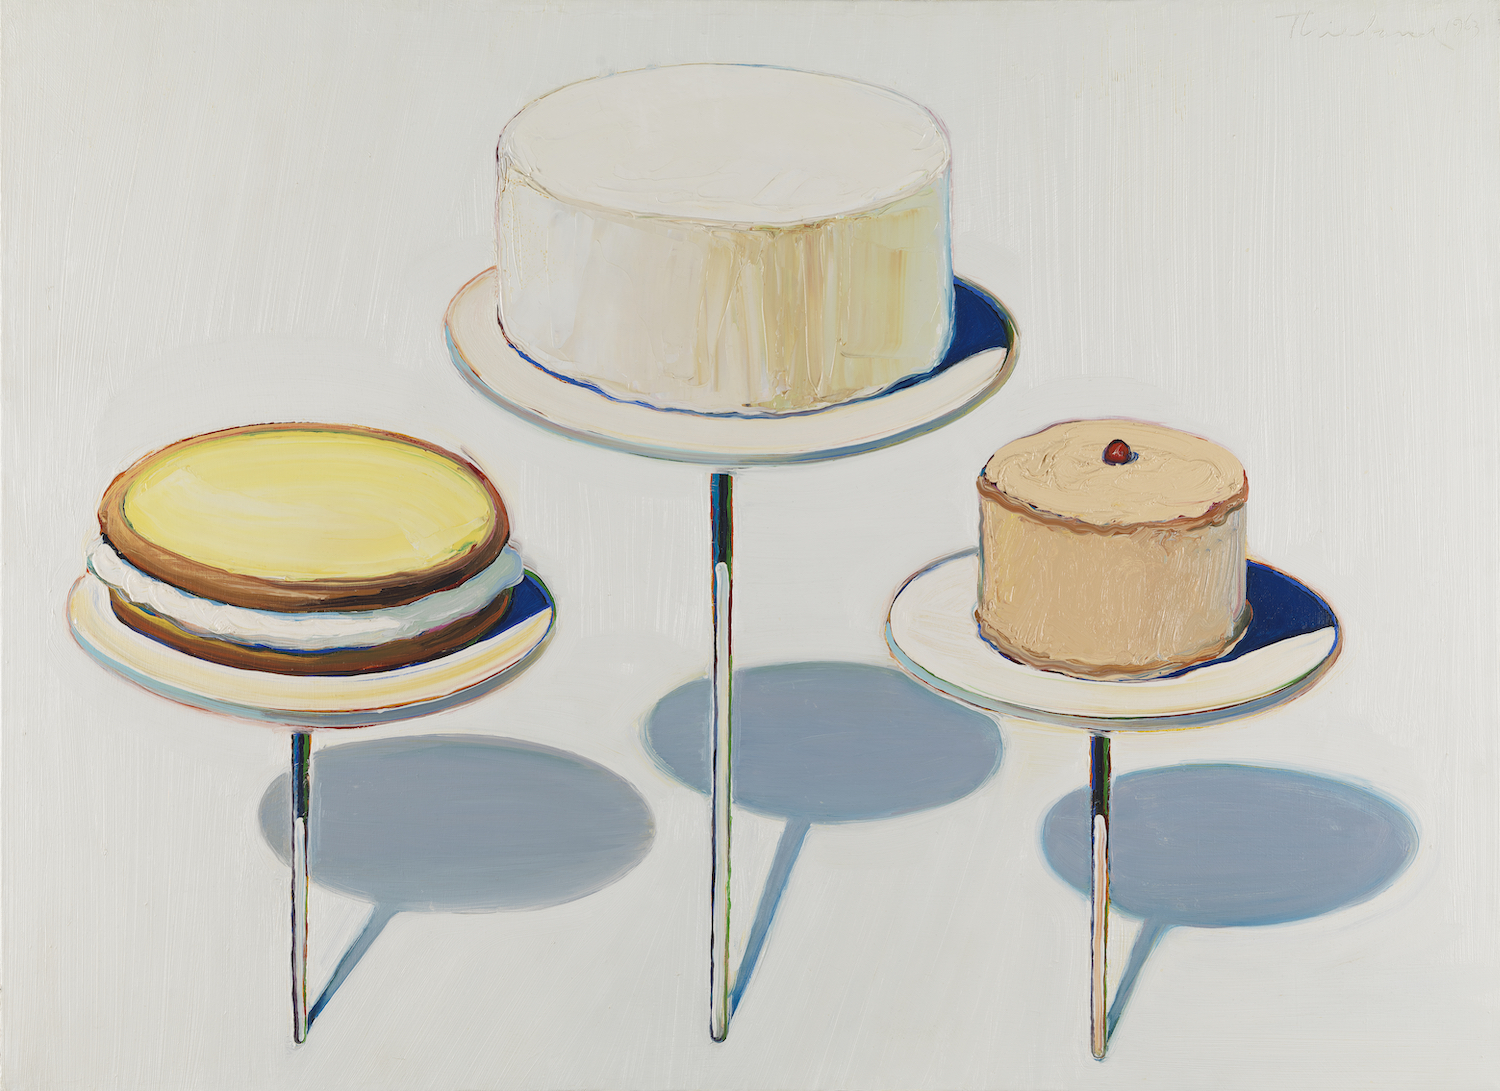 Wayne Thiebaud, Display Cakes, 1963.